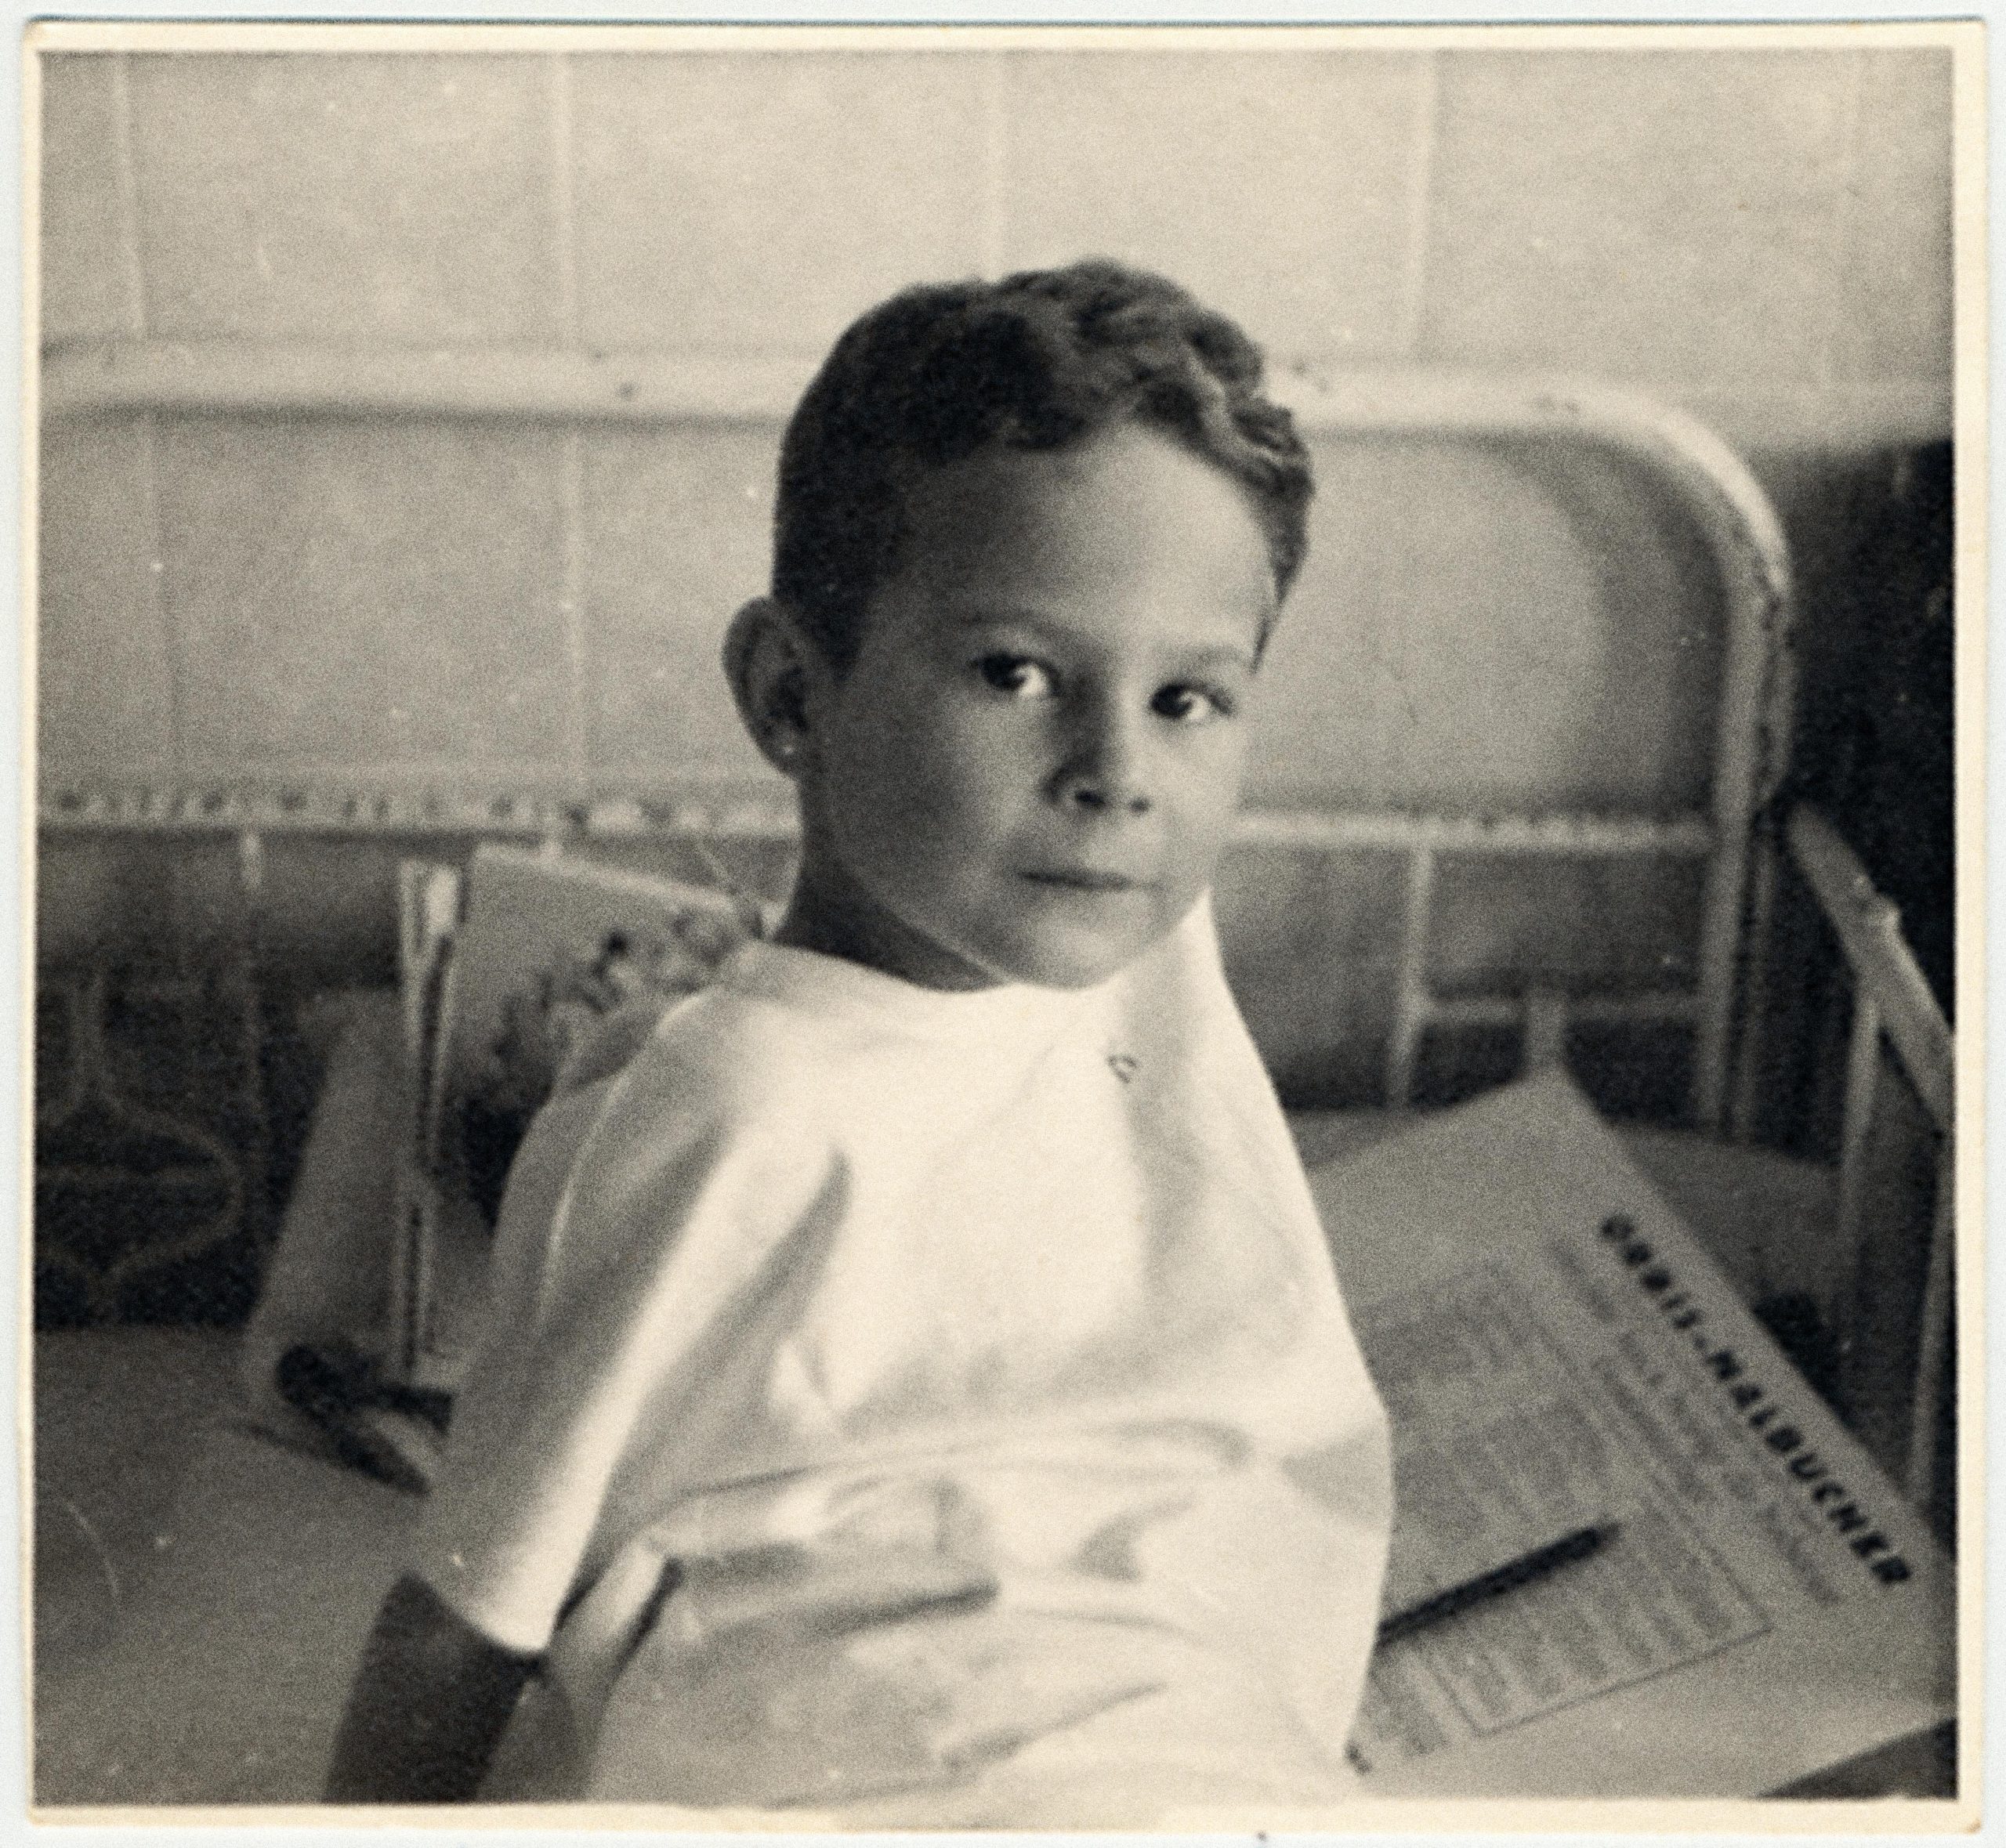 Bilden visar en ung pojke som sitter upp i en sjukhussäng och tittar in i kameran. Det är en äldre säng med stålram och i den finns ett papper och en penna.